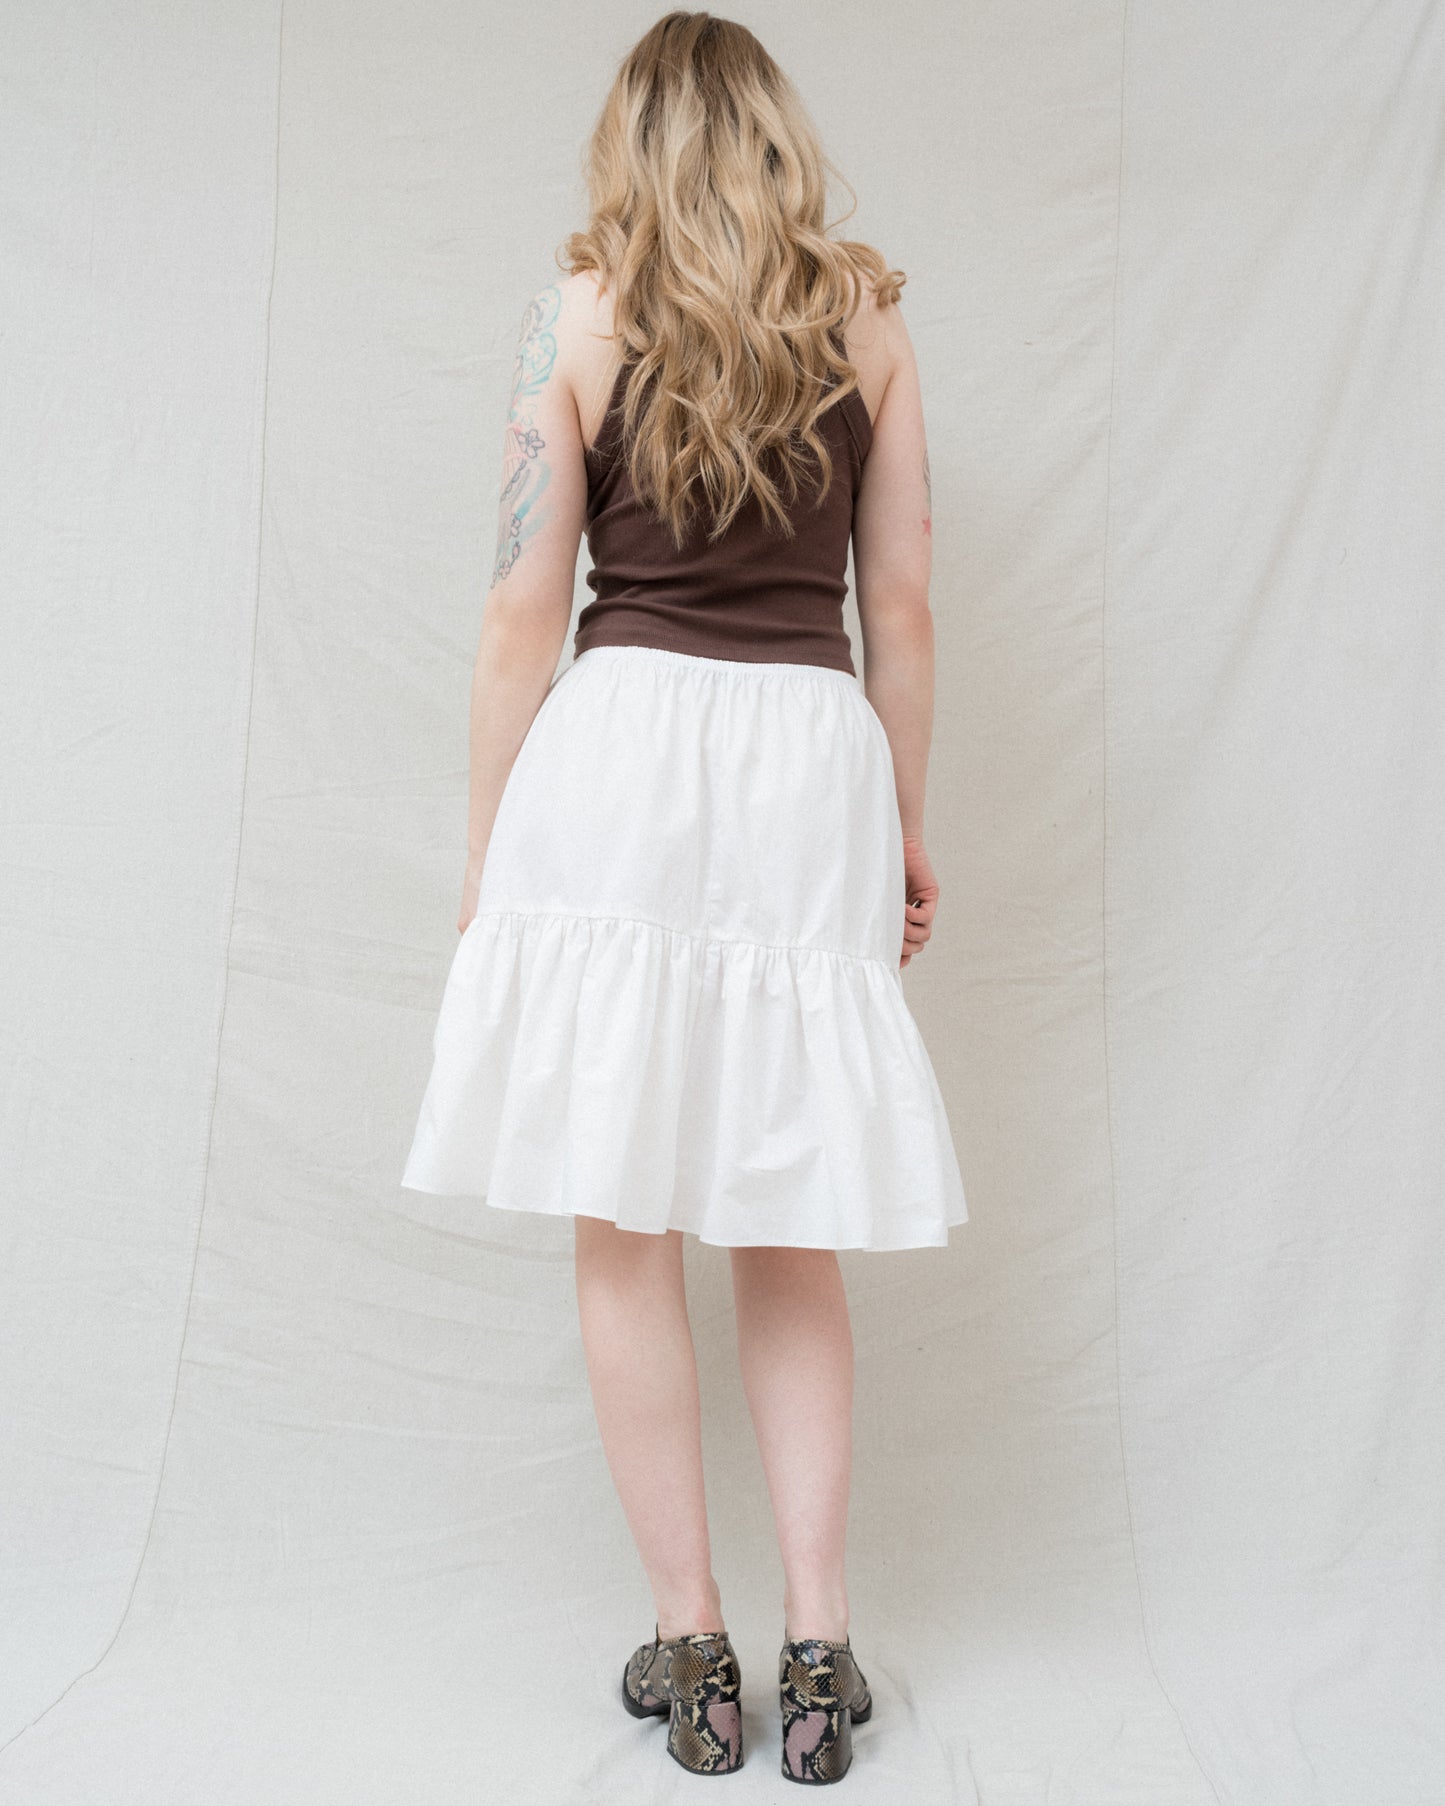 Matilda Skirt in Alabaster